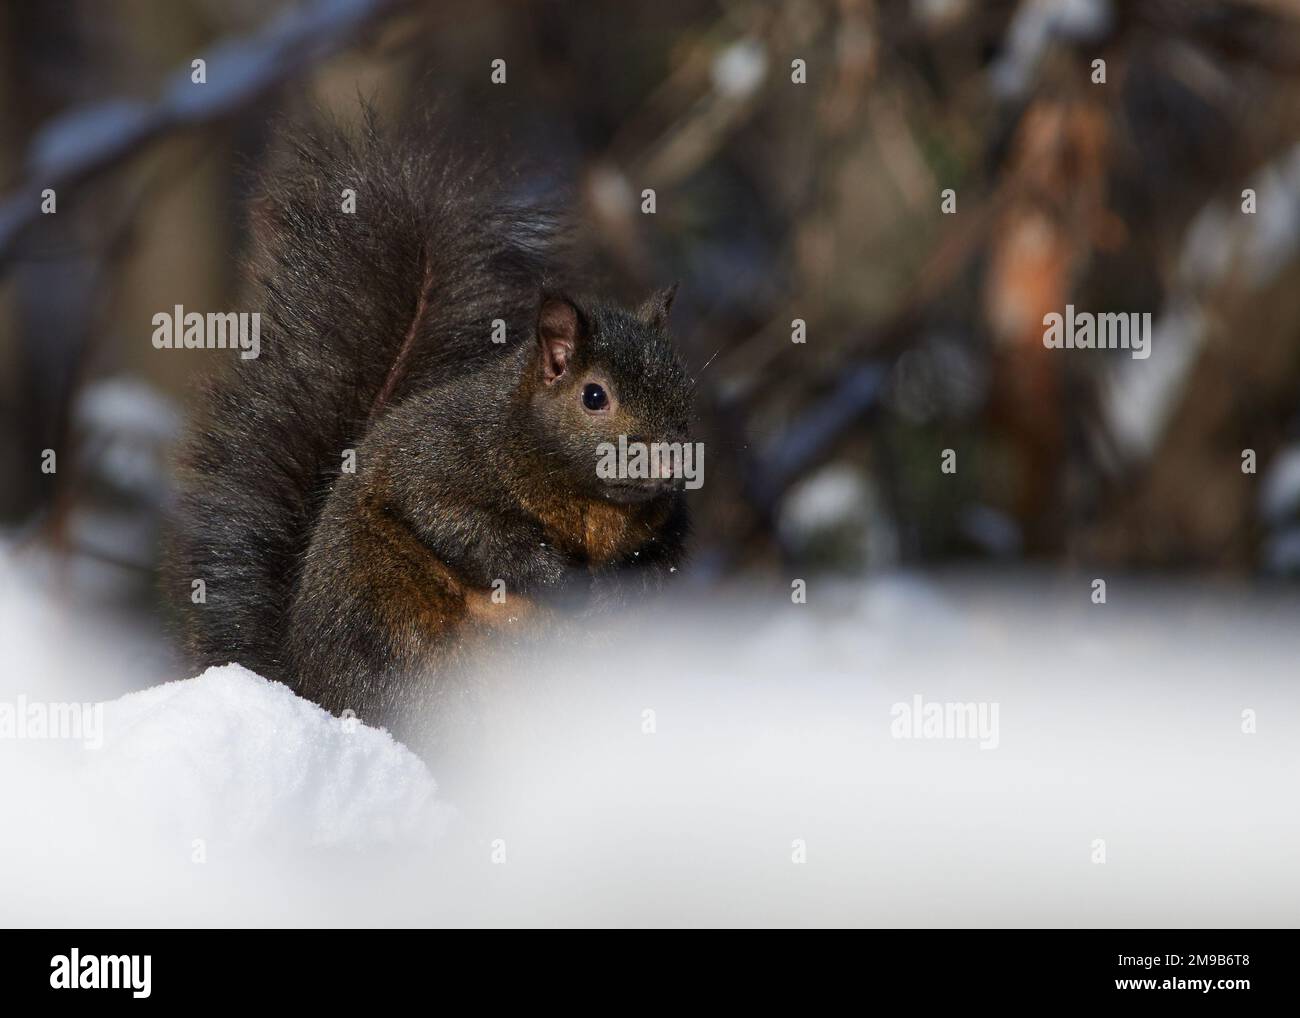 Ein Eichhörnchen, das an einem kalten Wintertag im Schnee sitzt. Stockfoto